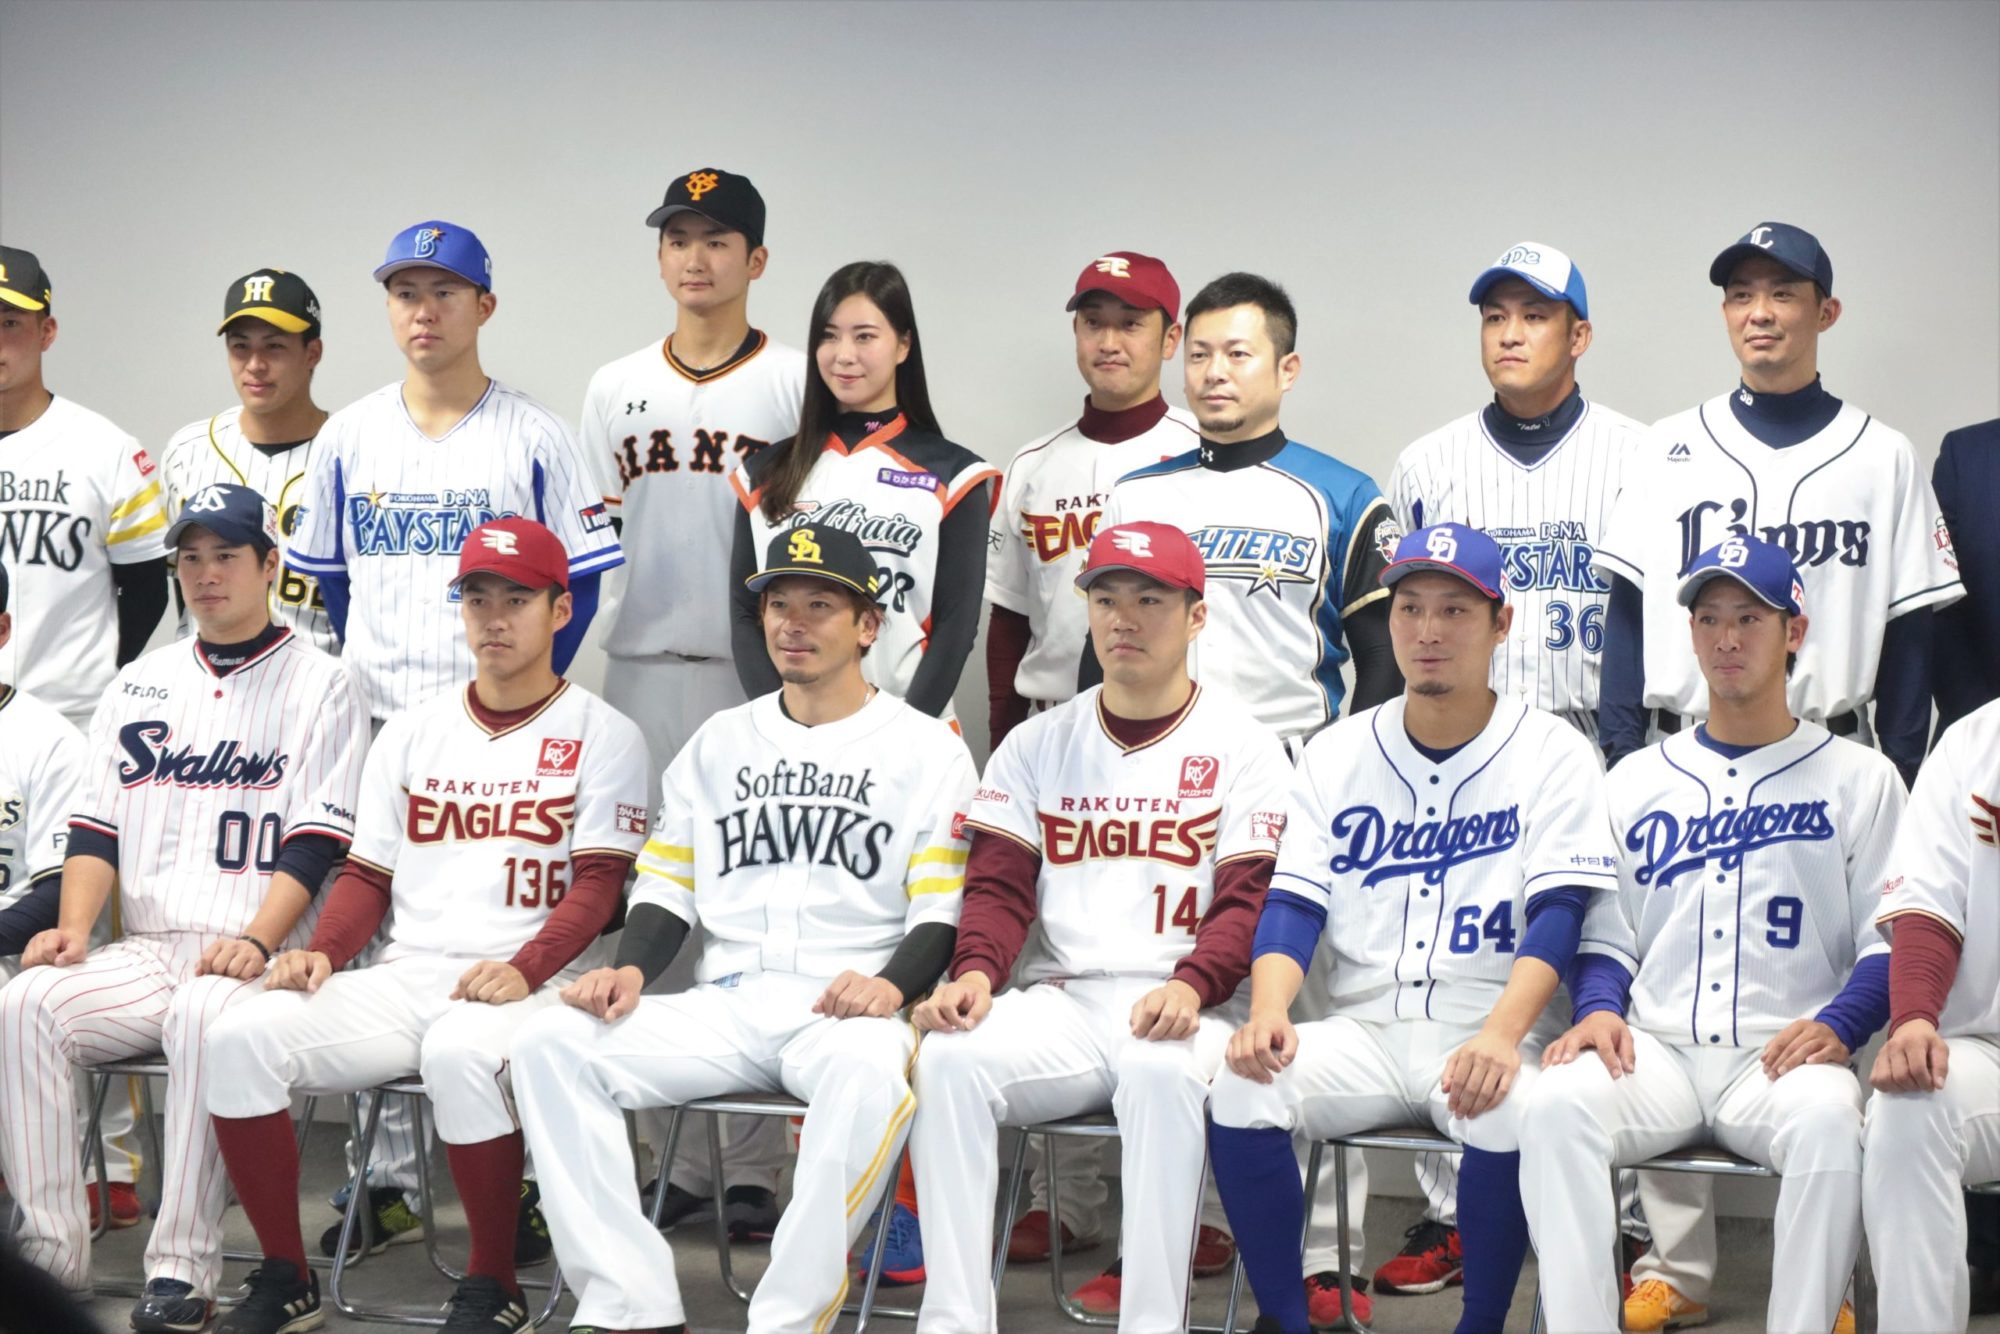 憧れの選手たちを目の前に 滋賀県出身のプロ野球選手が教える野球教室が開催されました Lomore 滋賀の情報を発信する地元メディア